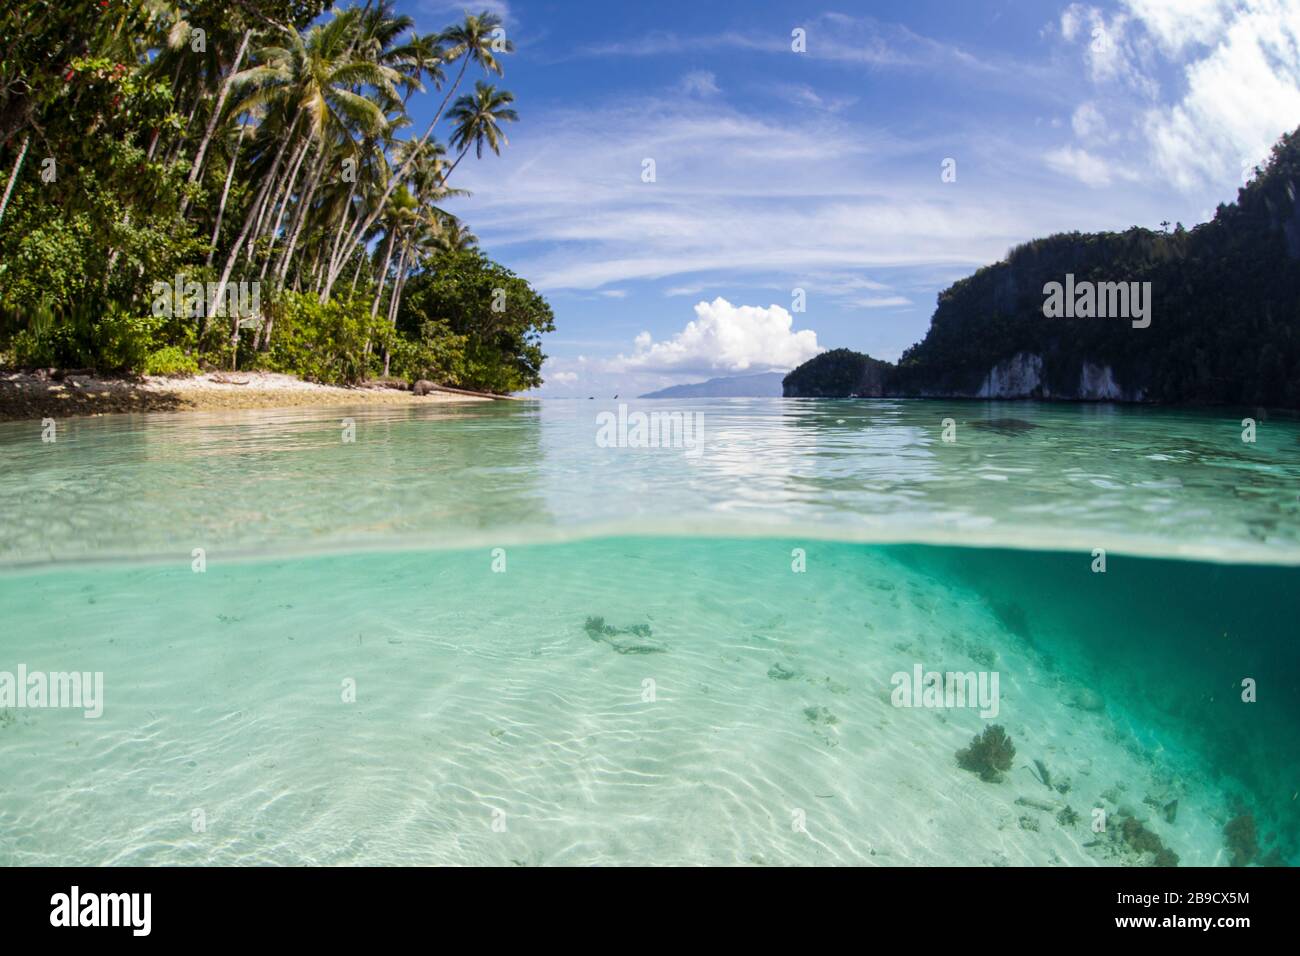 L'eau claire et chaude baigne une île idyllique dans une partie éloignée de Raja Ampat, Indonésie. Banque D'Images